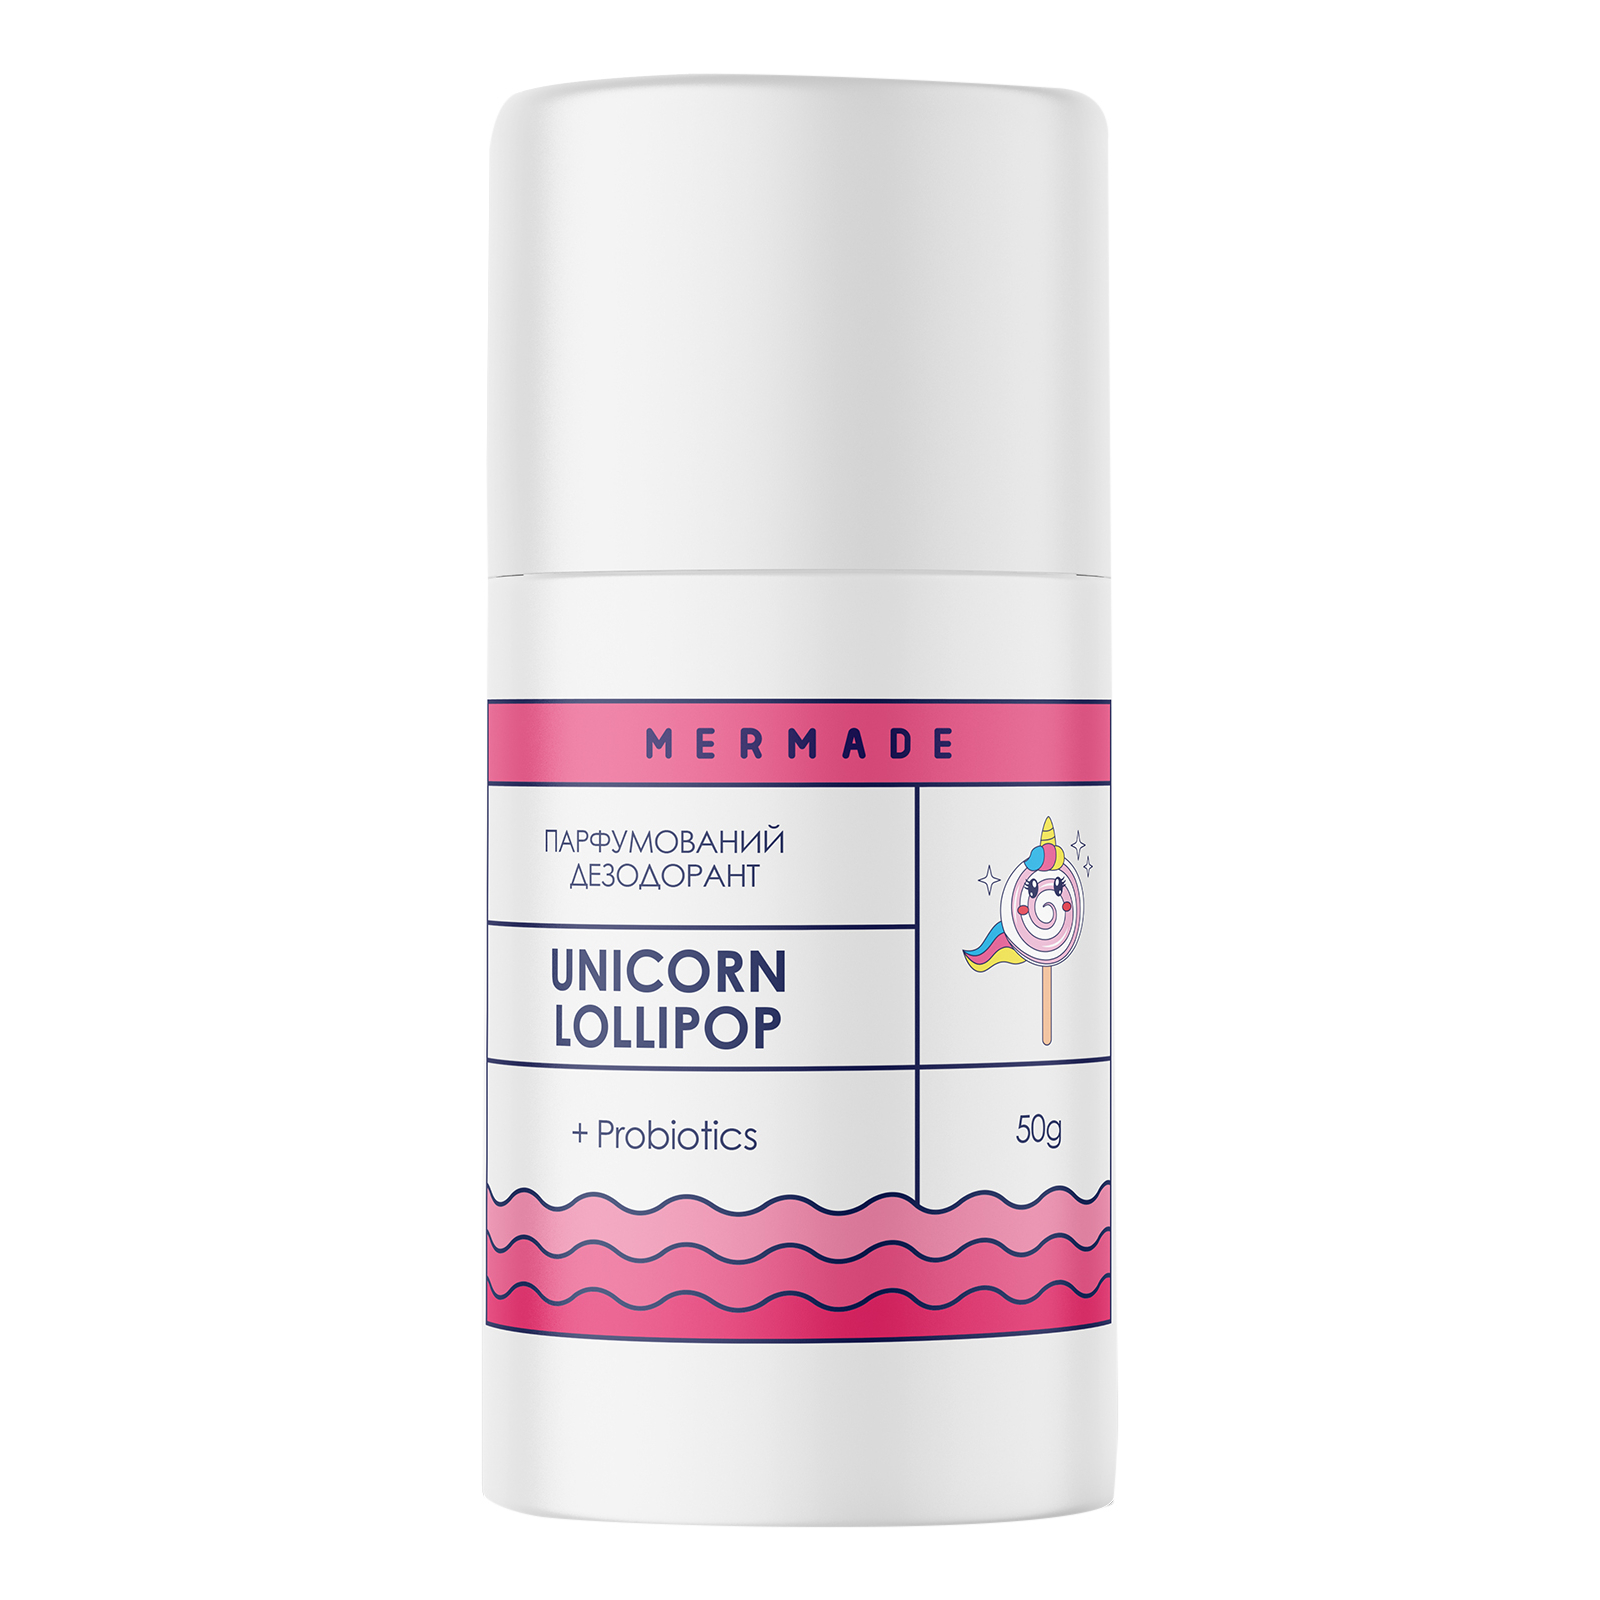 Дезодорант Mermade Unicorn Lolipop Парфюмированный с пробиотиком 50 г (4820241302772)